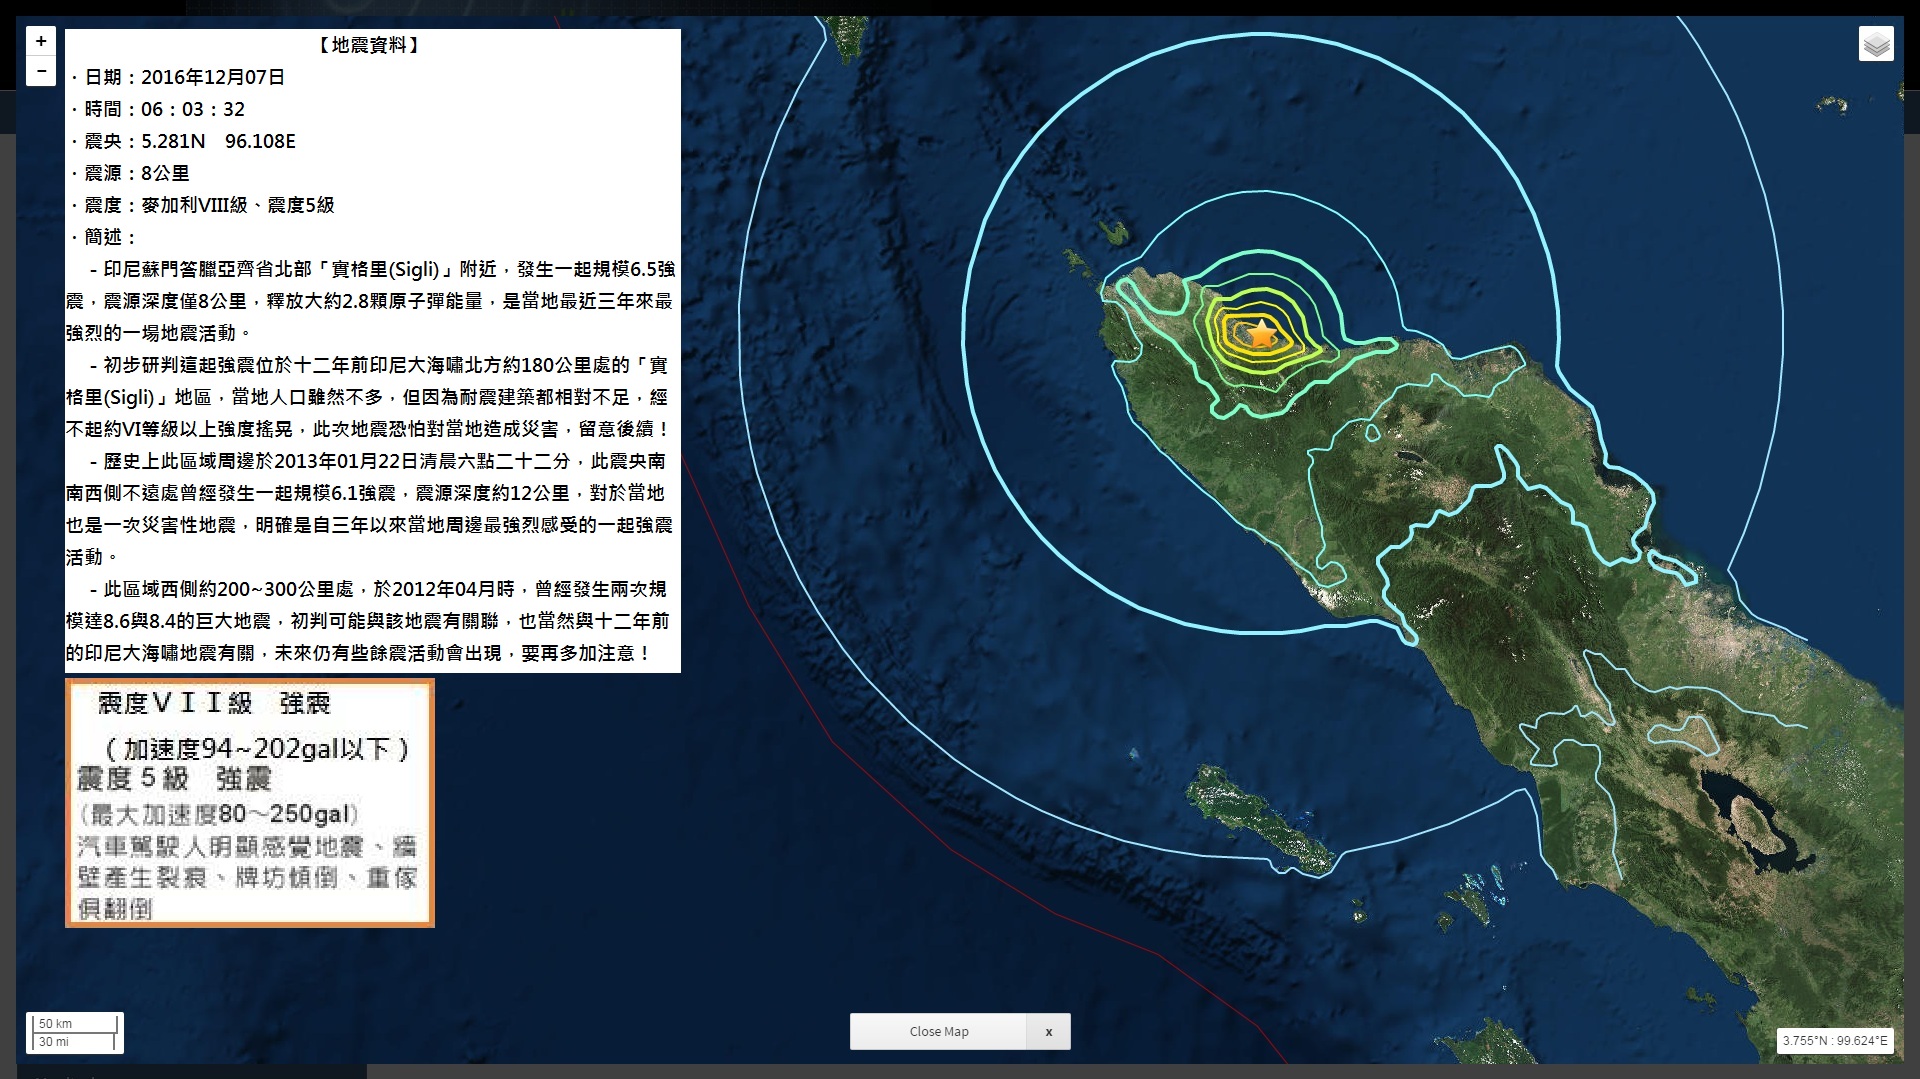 840.2016.12.07-06-03-32-印尼蘇門答臘北部規模6.5強震深度8公里.jpg